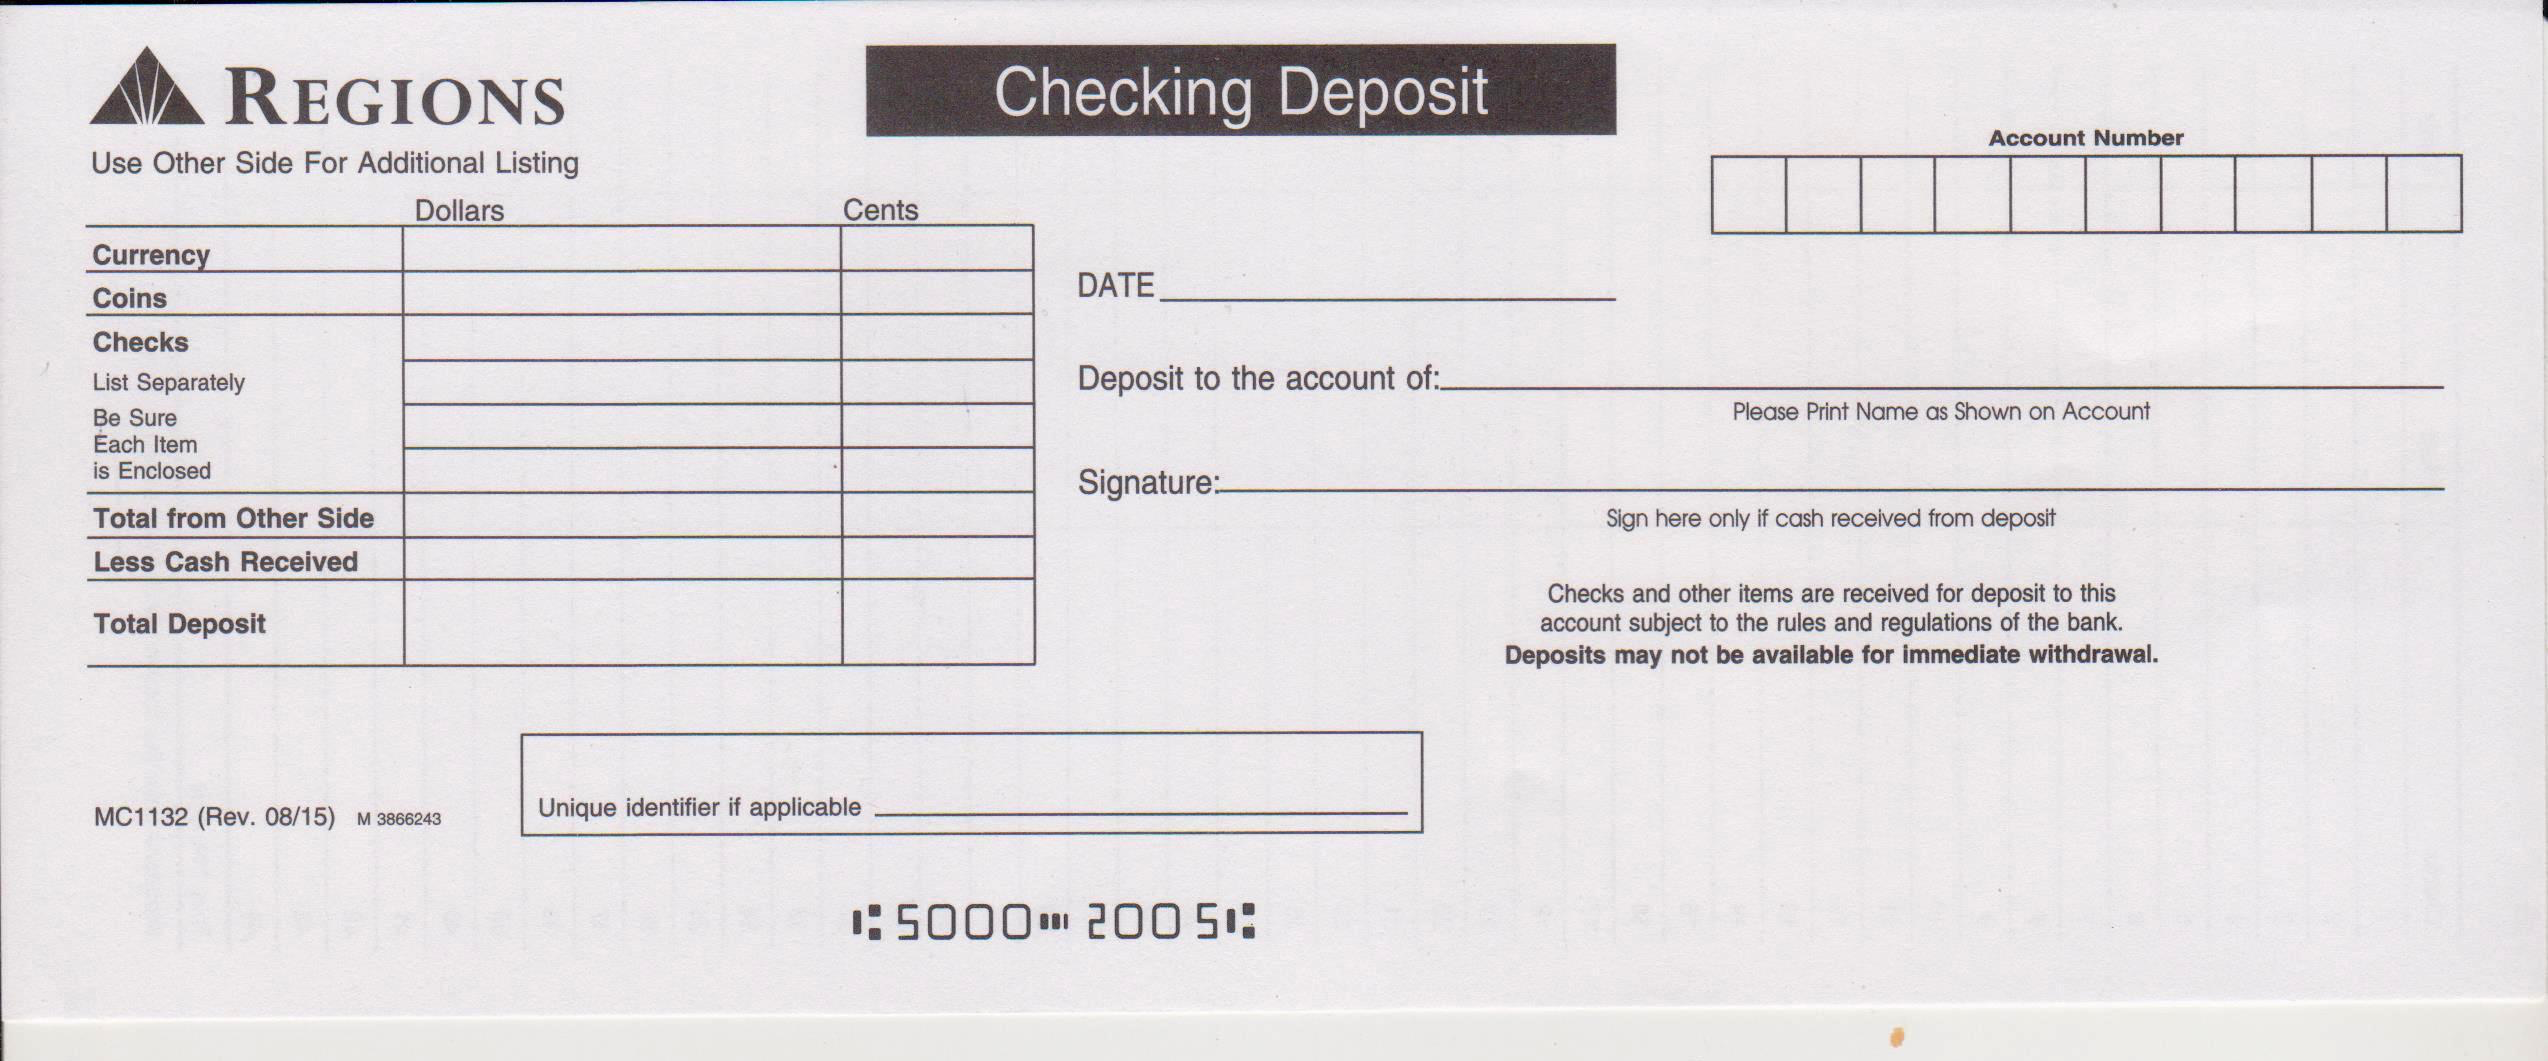 Regions Bank Deposit Slip - Free Printable Template - CheckDeposit With Regard To Bank Deposit Slips Template